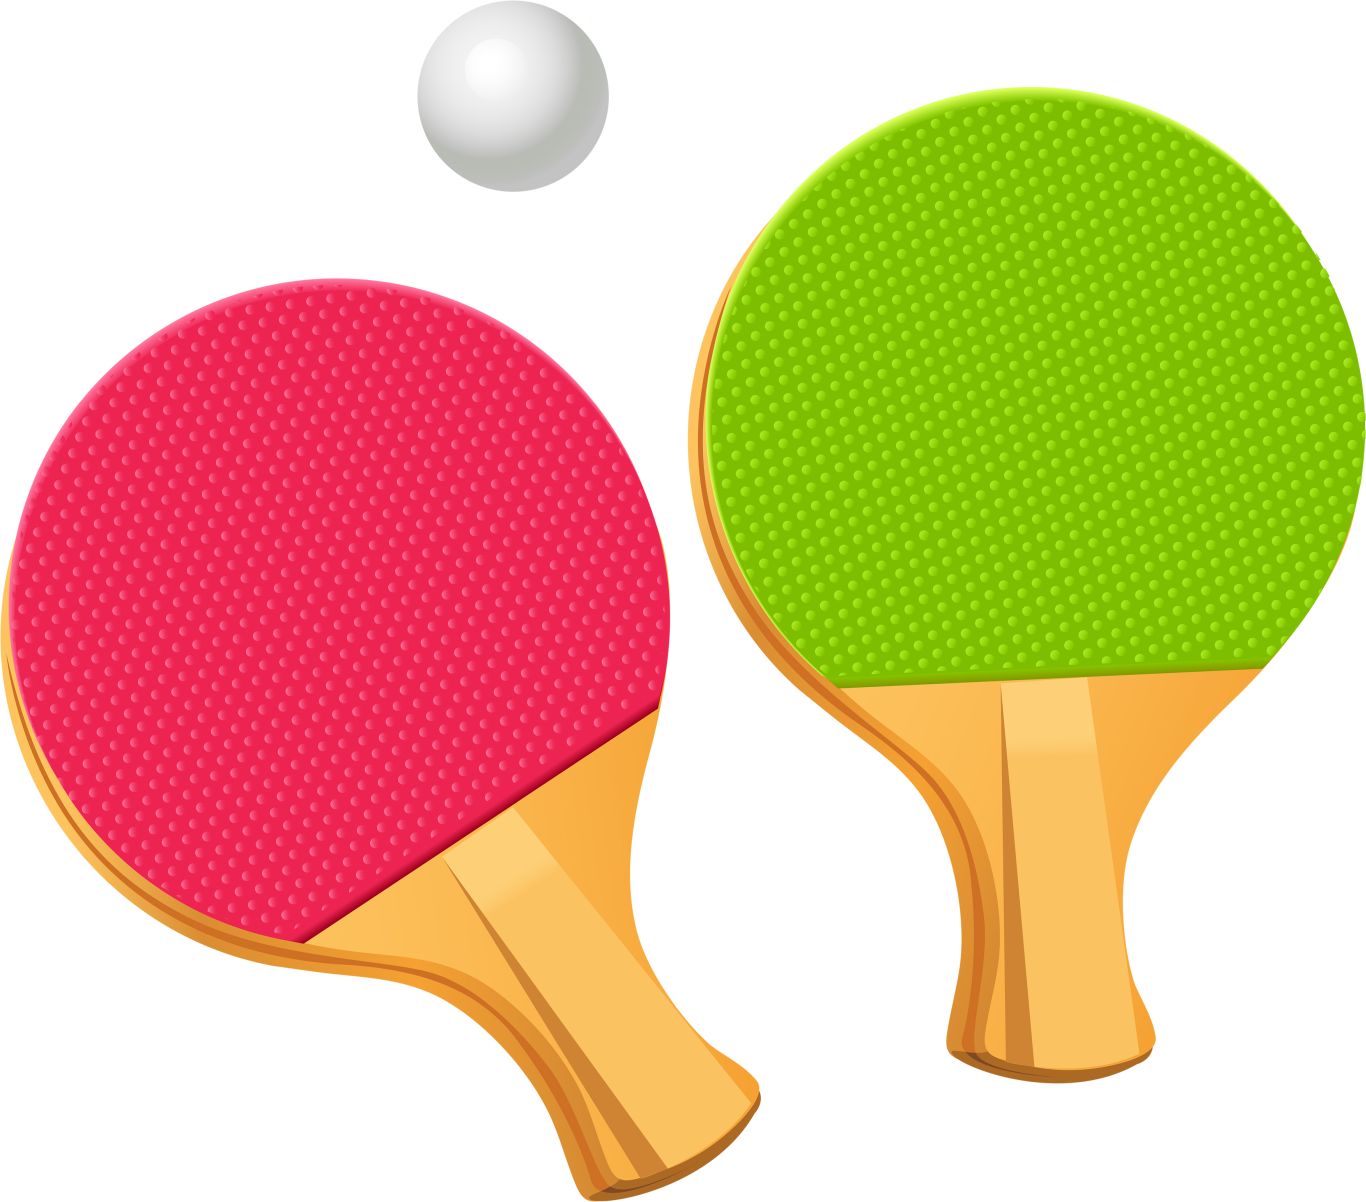 Ping Pong racket PNG image    图片编号:10384